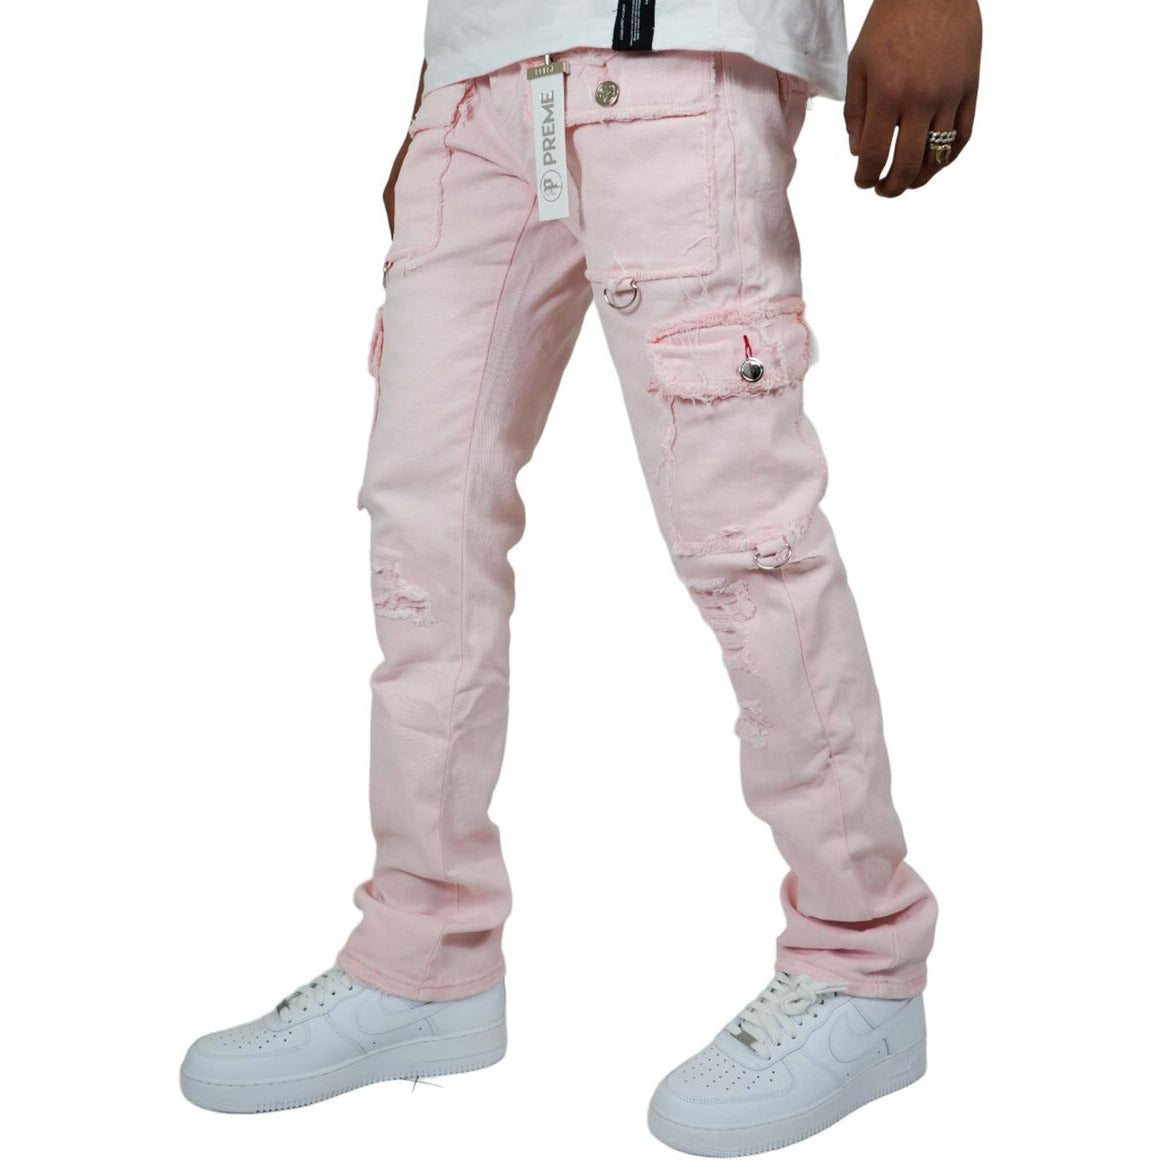 PREME Powder Pink Ripped Cargo Denim Jeans (PR-WB-1285)